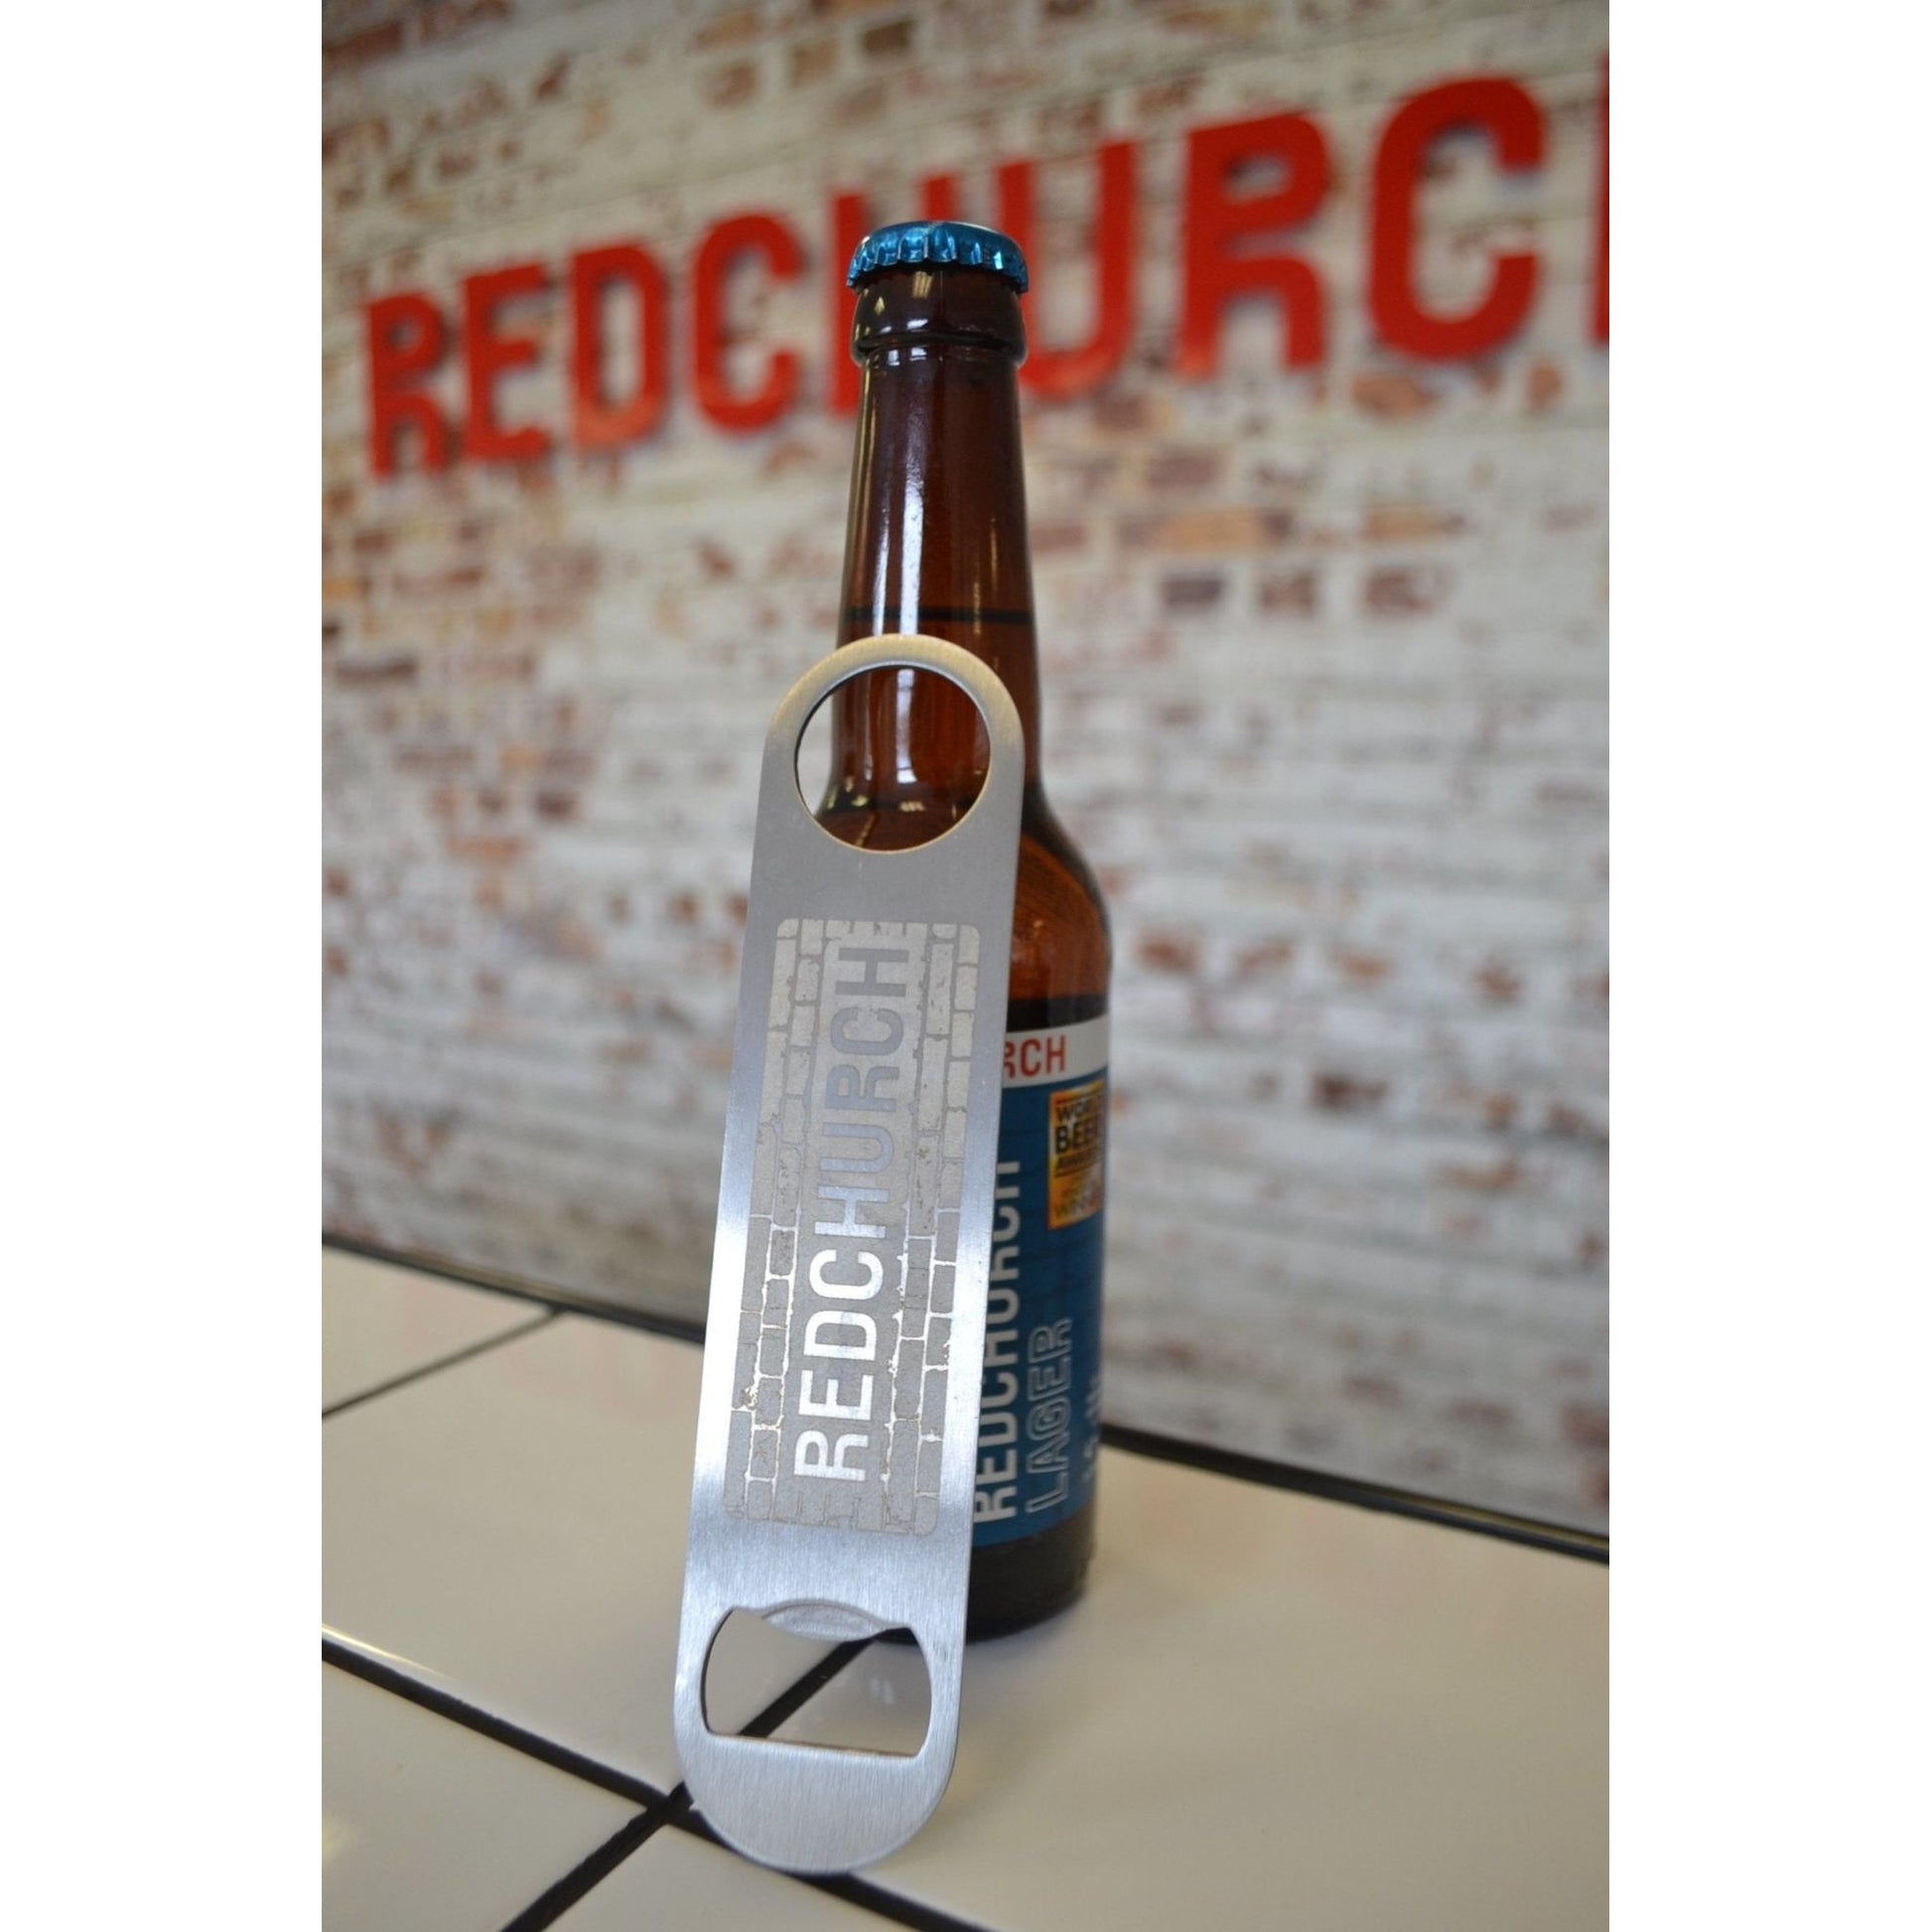 Redchurch bar blade bottle opener - 2